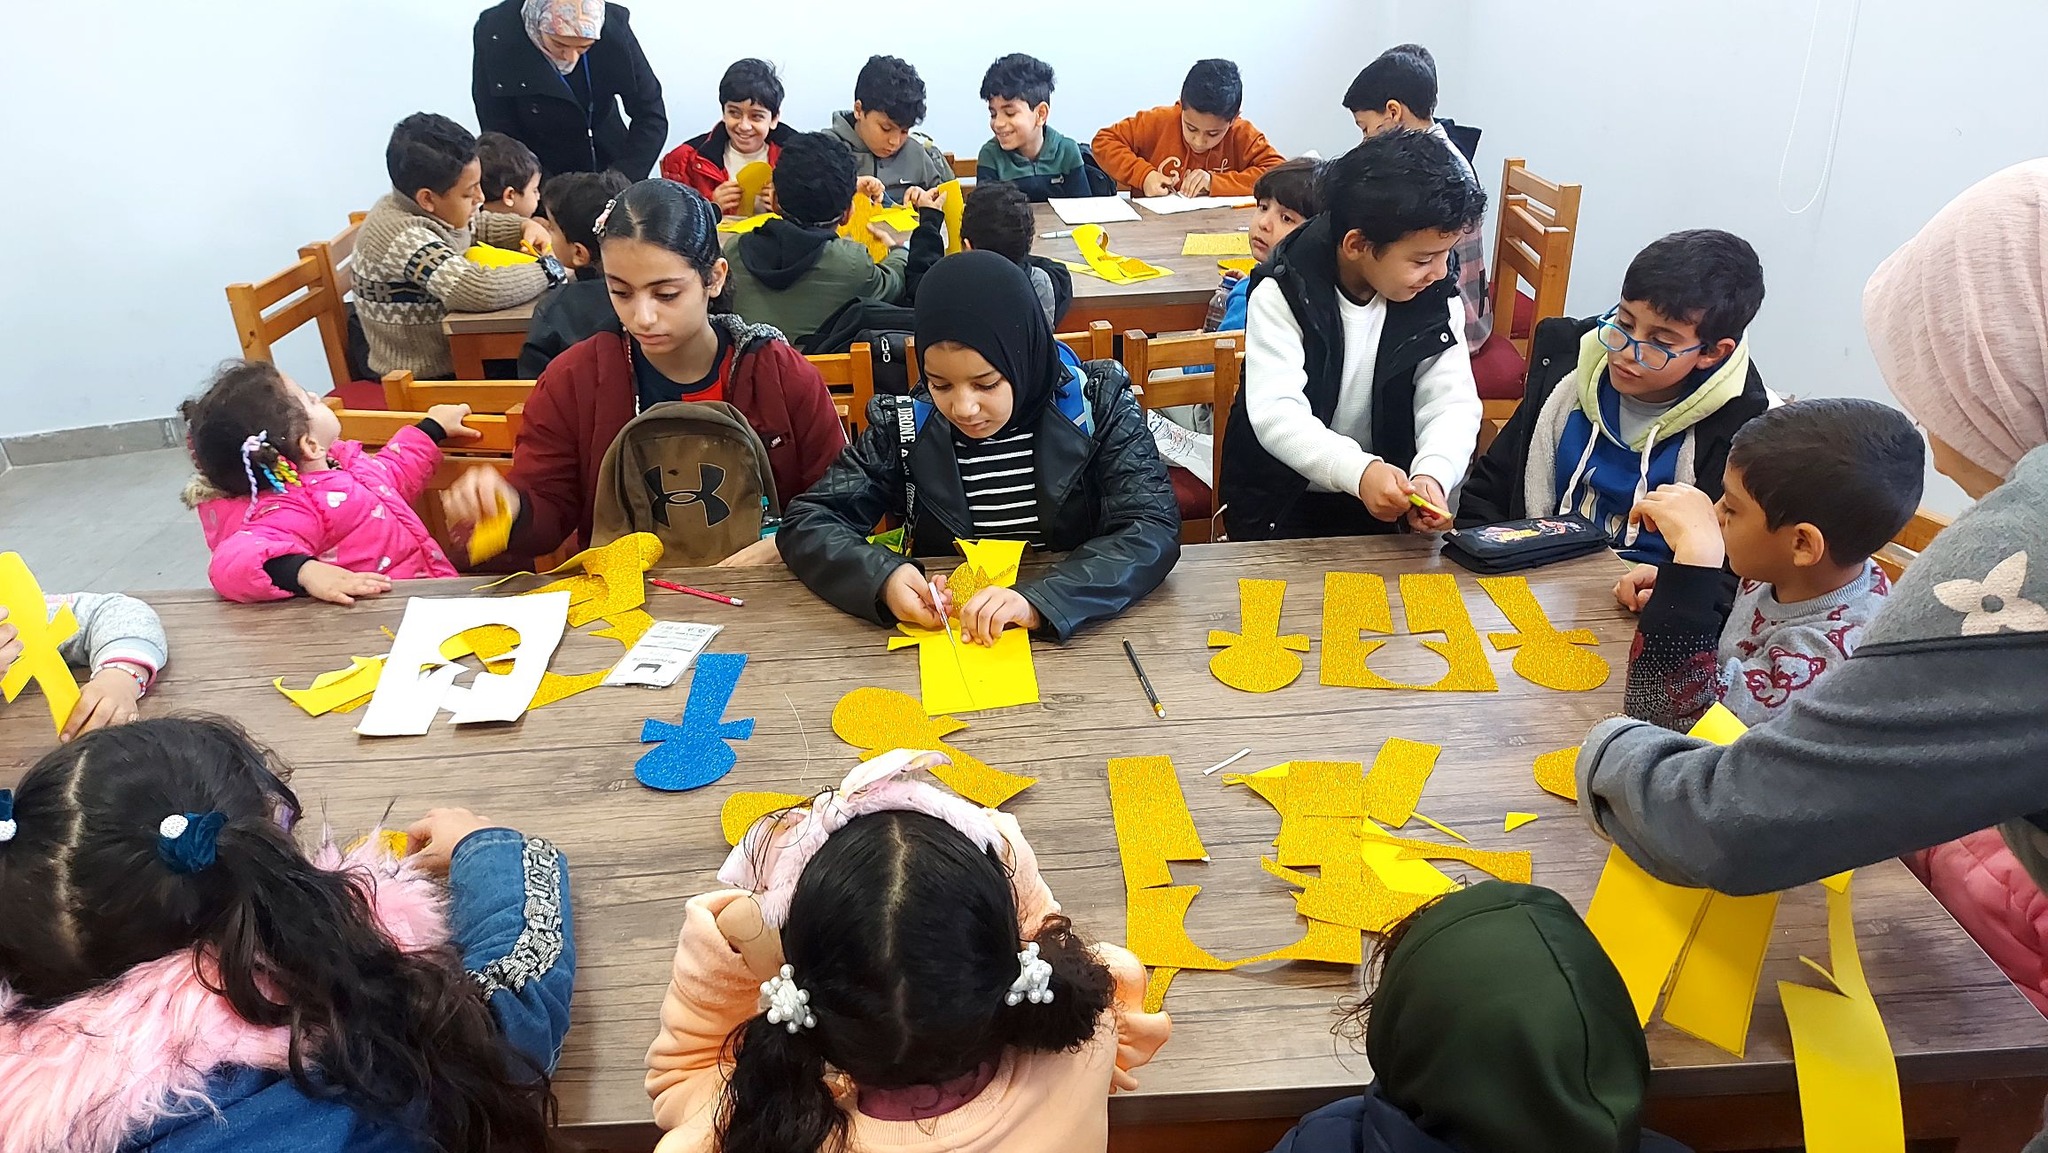 تشكيل الأطفال بالورق  معبرين عن الرموز المصرية